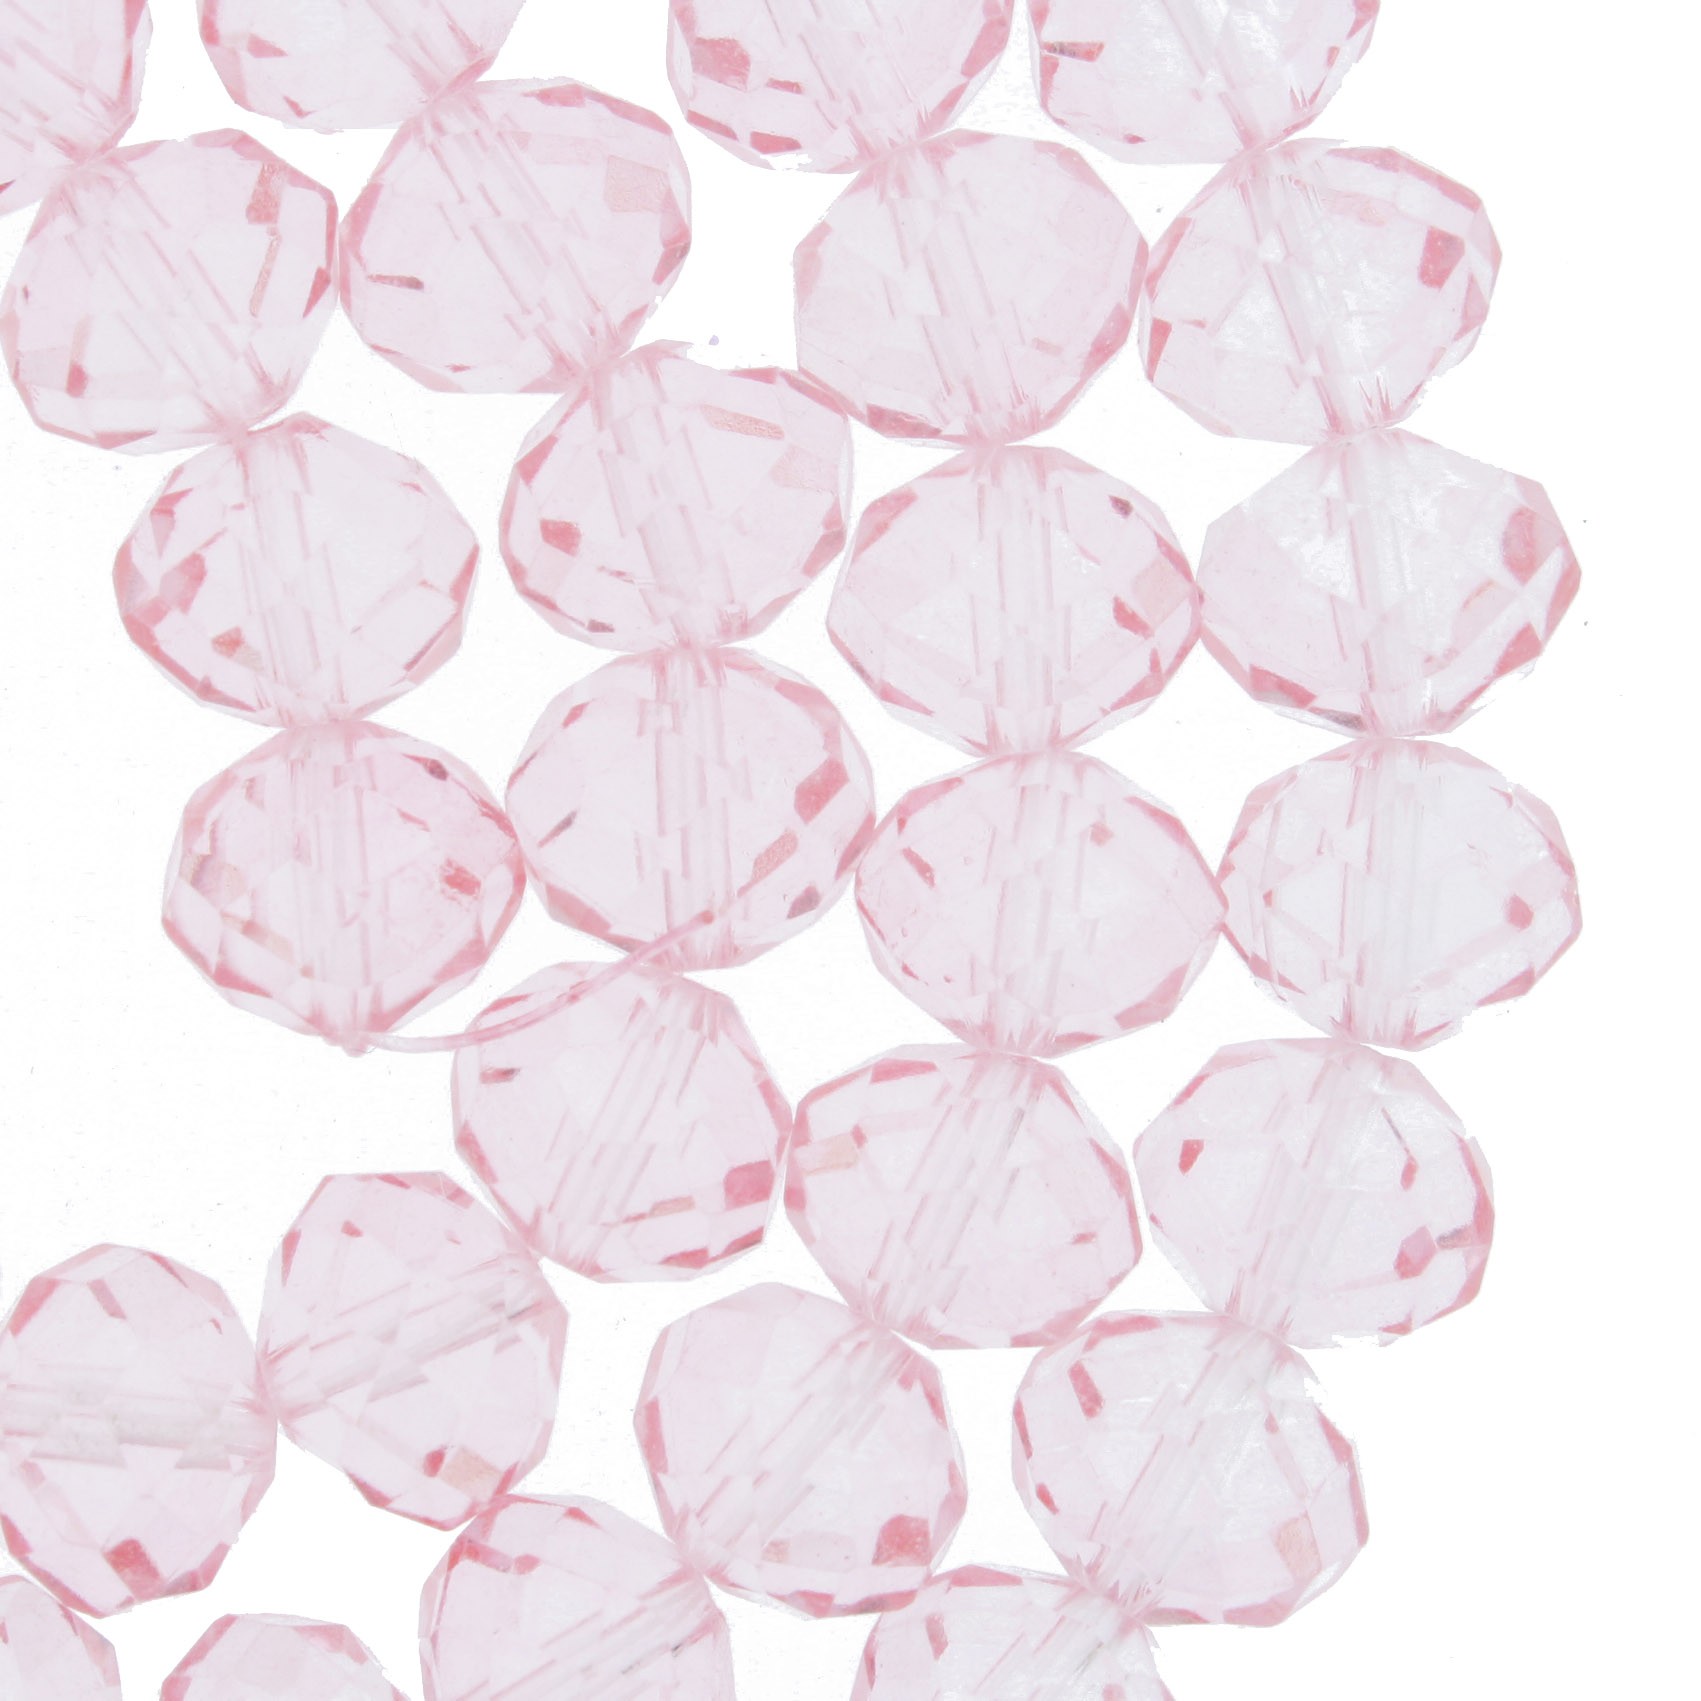 Fio de Cristal - Flat® - Rosa Claro Transparente - 10mm  - Stéphanie Bijoux® - Peças para Bijuterias e Artesanato